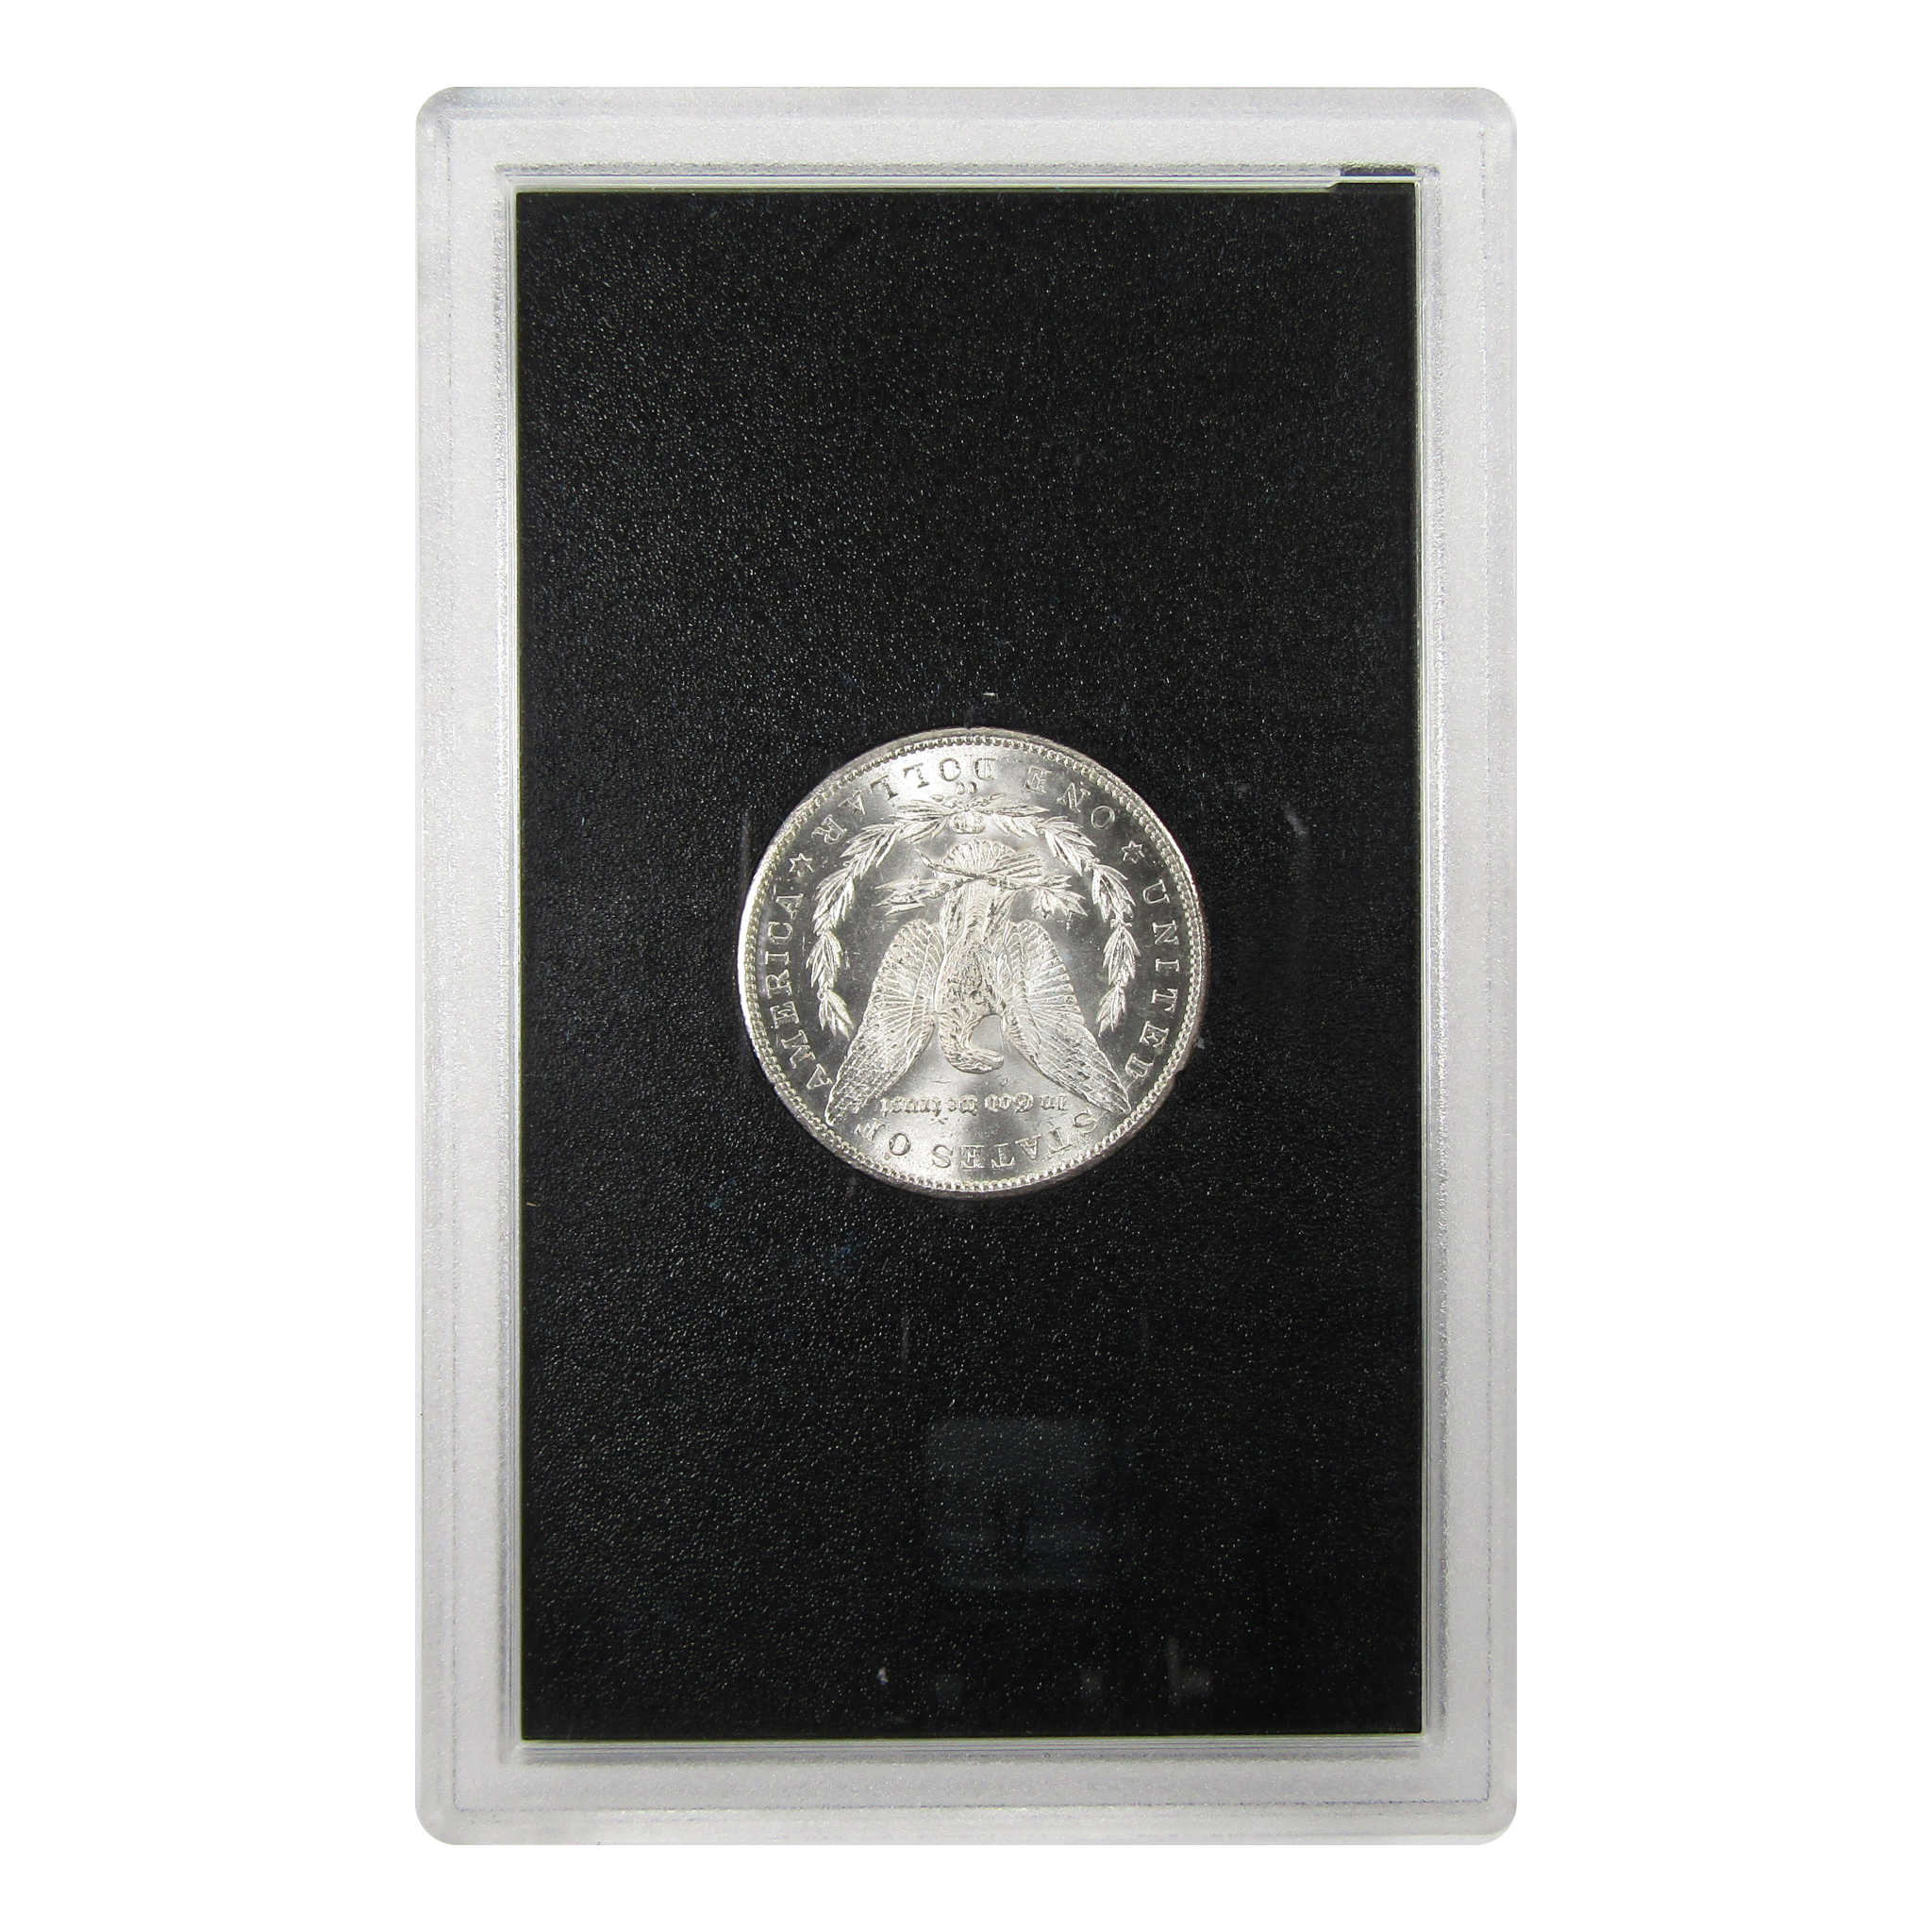 1884 CC GSA Morgan Dollar BU Uncirculated Silver $1 Coin SKU:I9440 - Morgan coin - Morgan silver dollar - Morgan silver dollar for sale - Profile Coins &amp; Collectibles